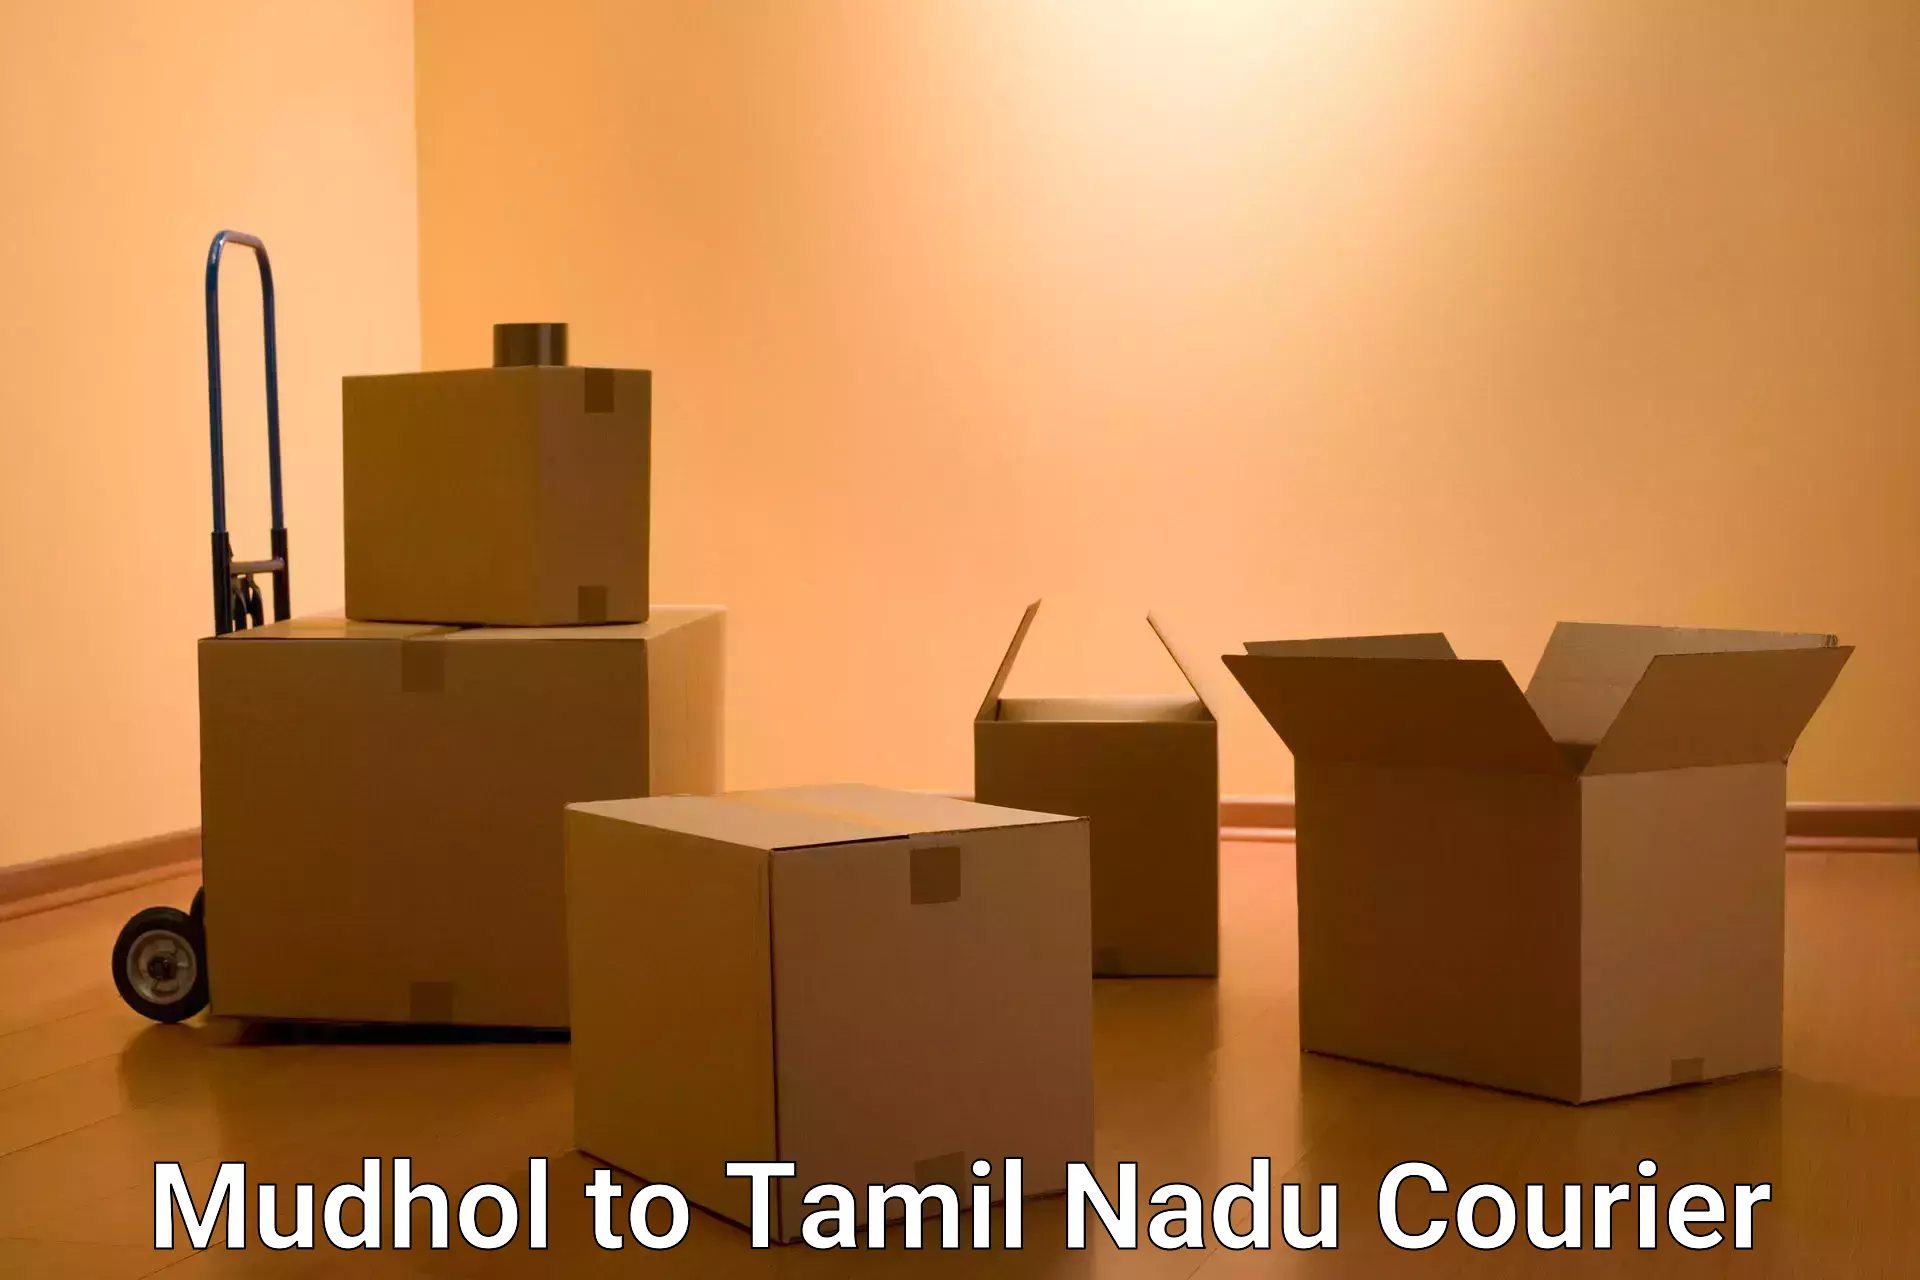 Ocean freight courier Mudhol to Tamil Nadu